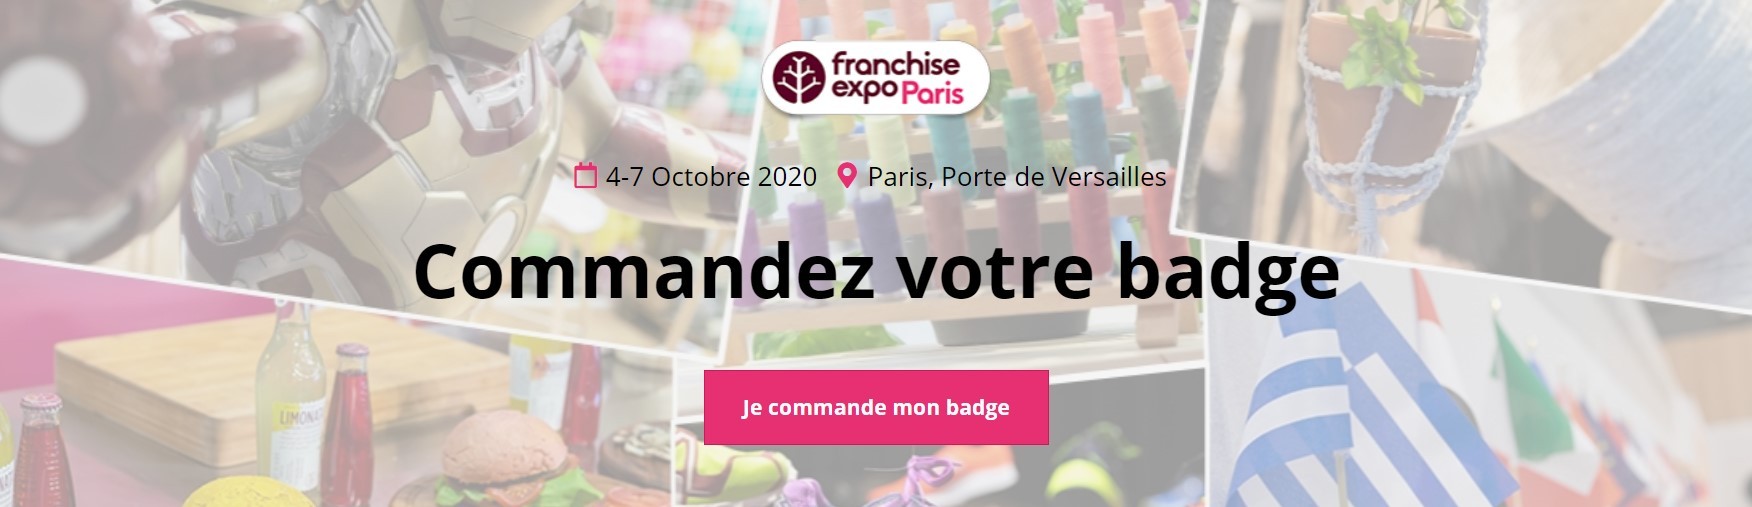 Franchise Expo Paris 2020 badge 